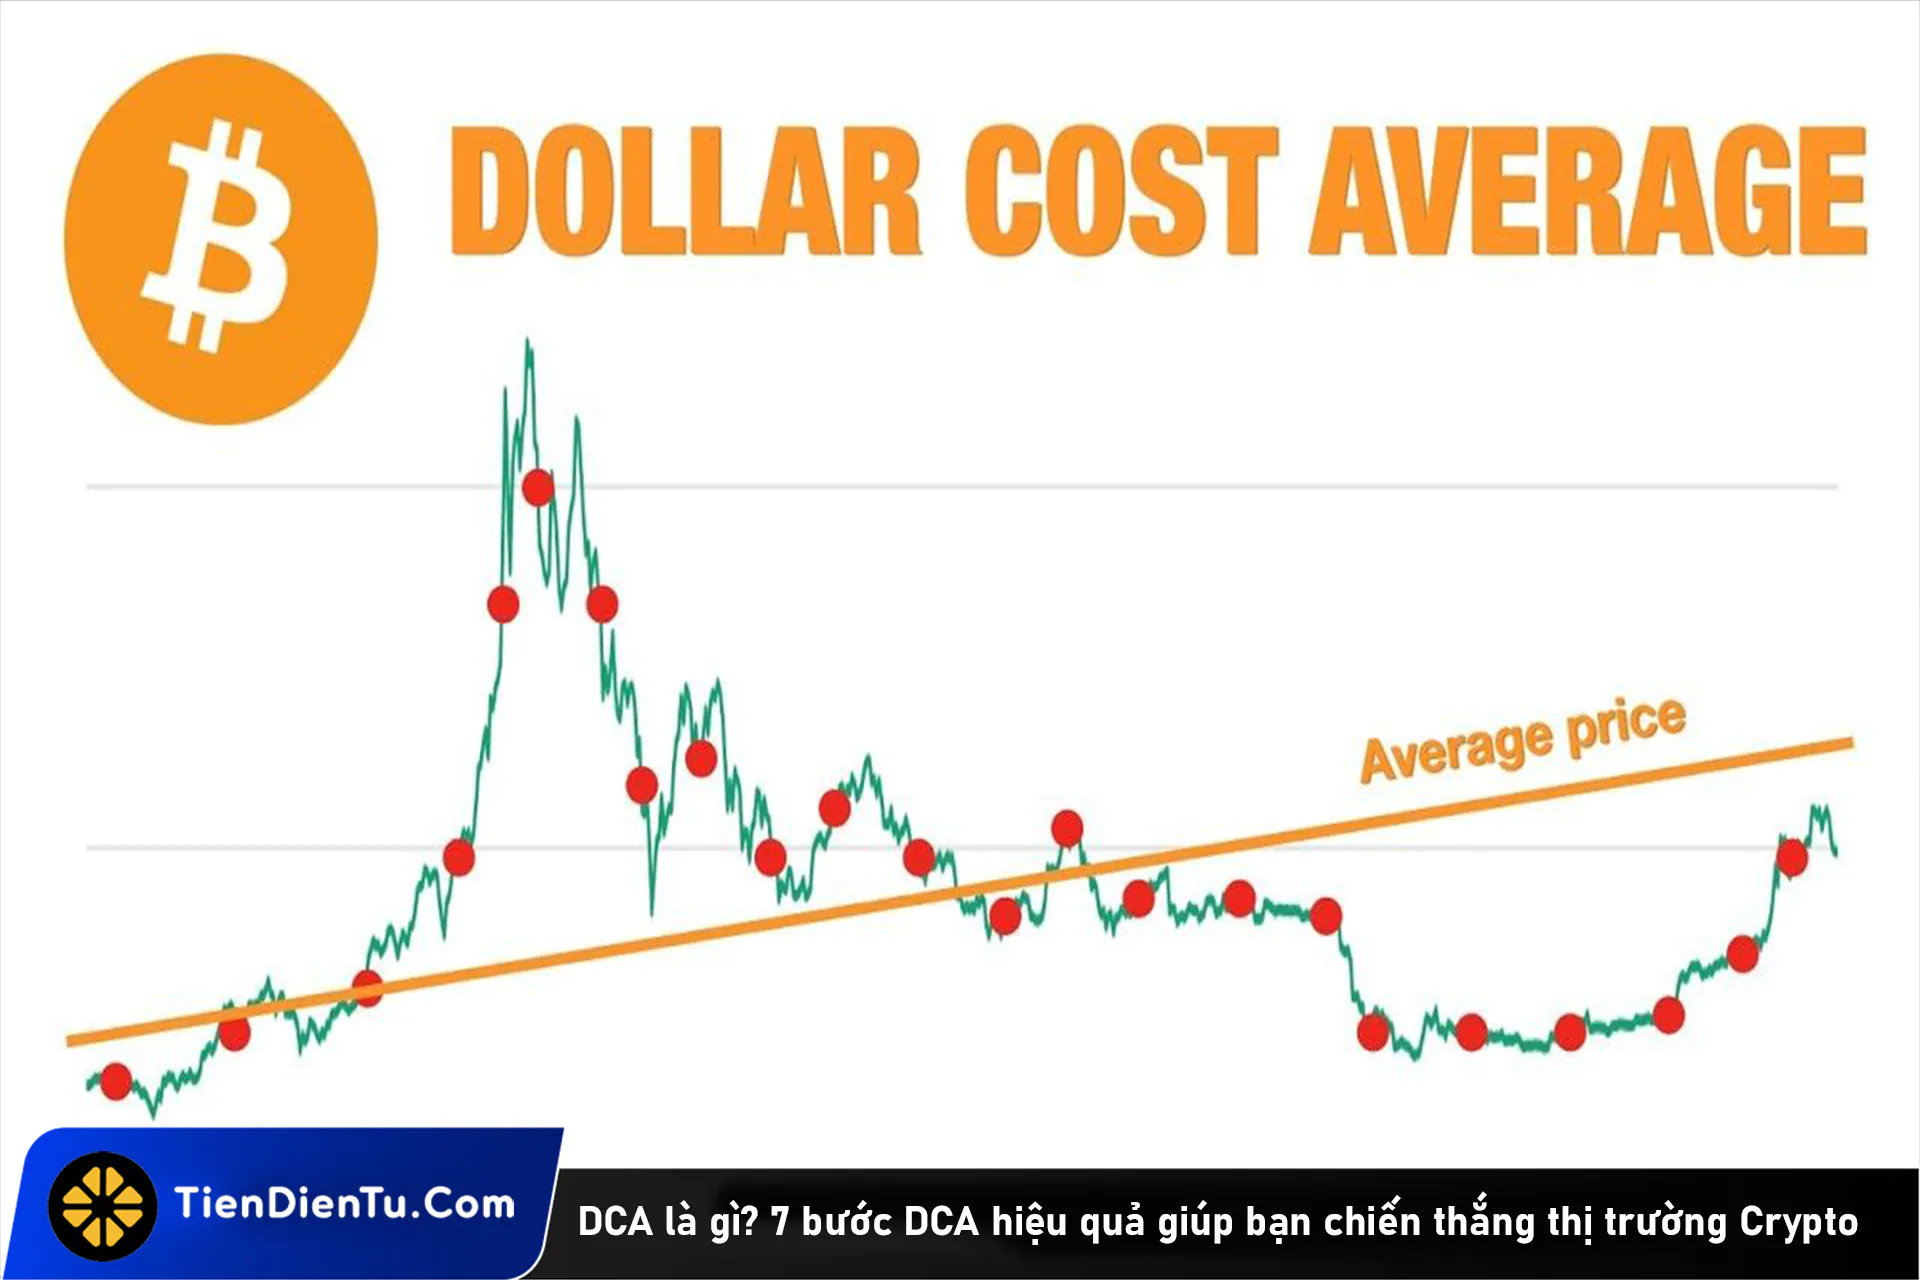 DCA là gì? 7 bước DCA hiệu quả giúp bạn chiến thắng thị trường Crypto